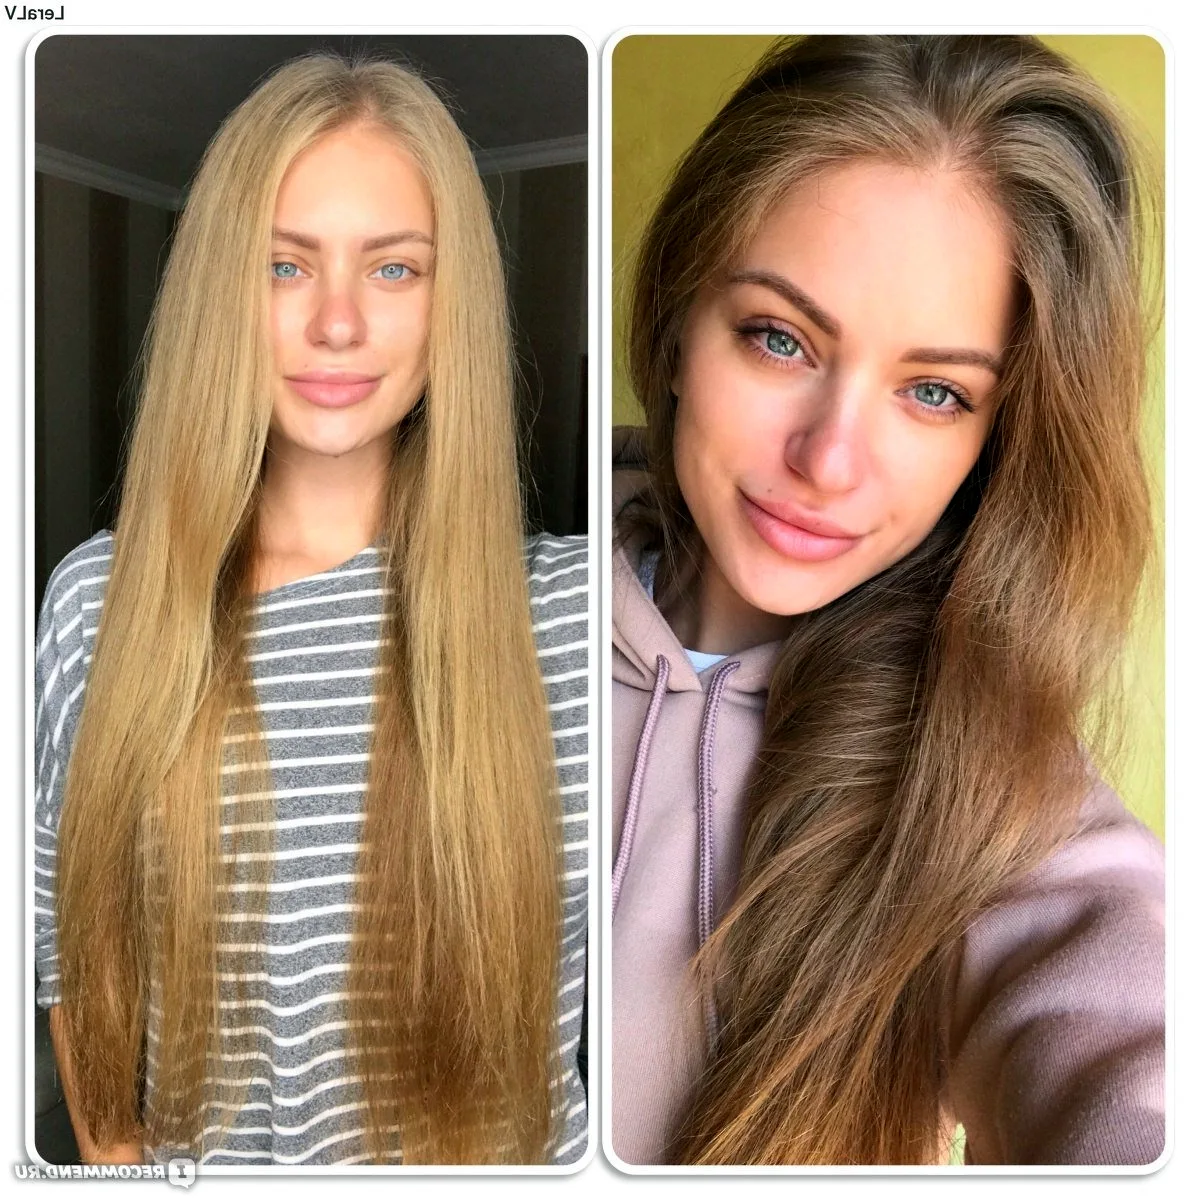 Осветление волос до и после